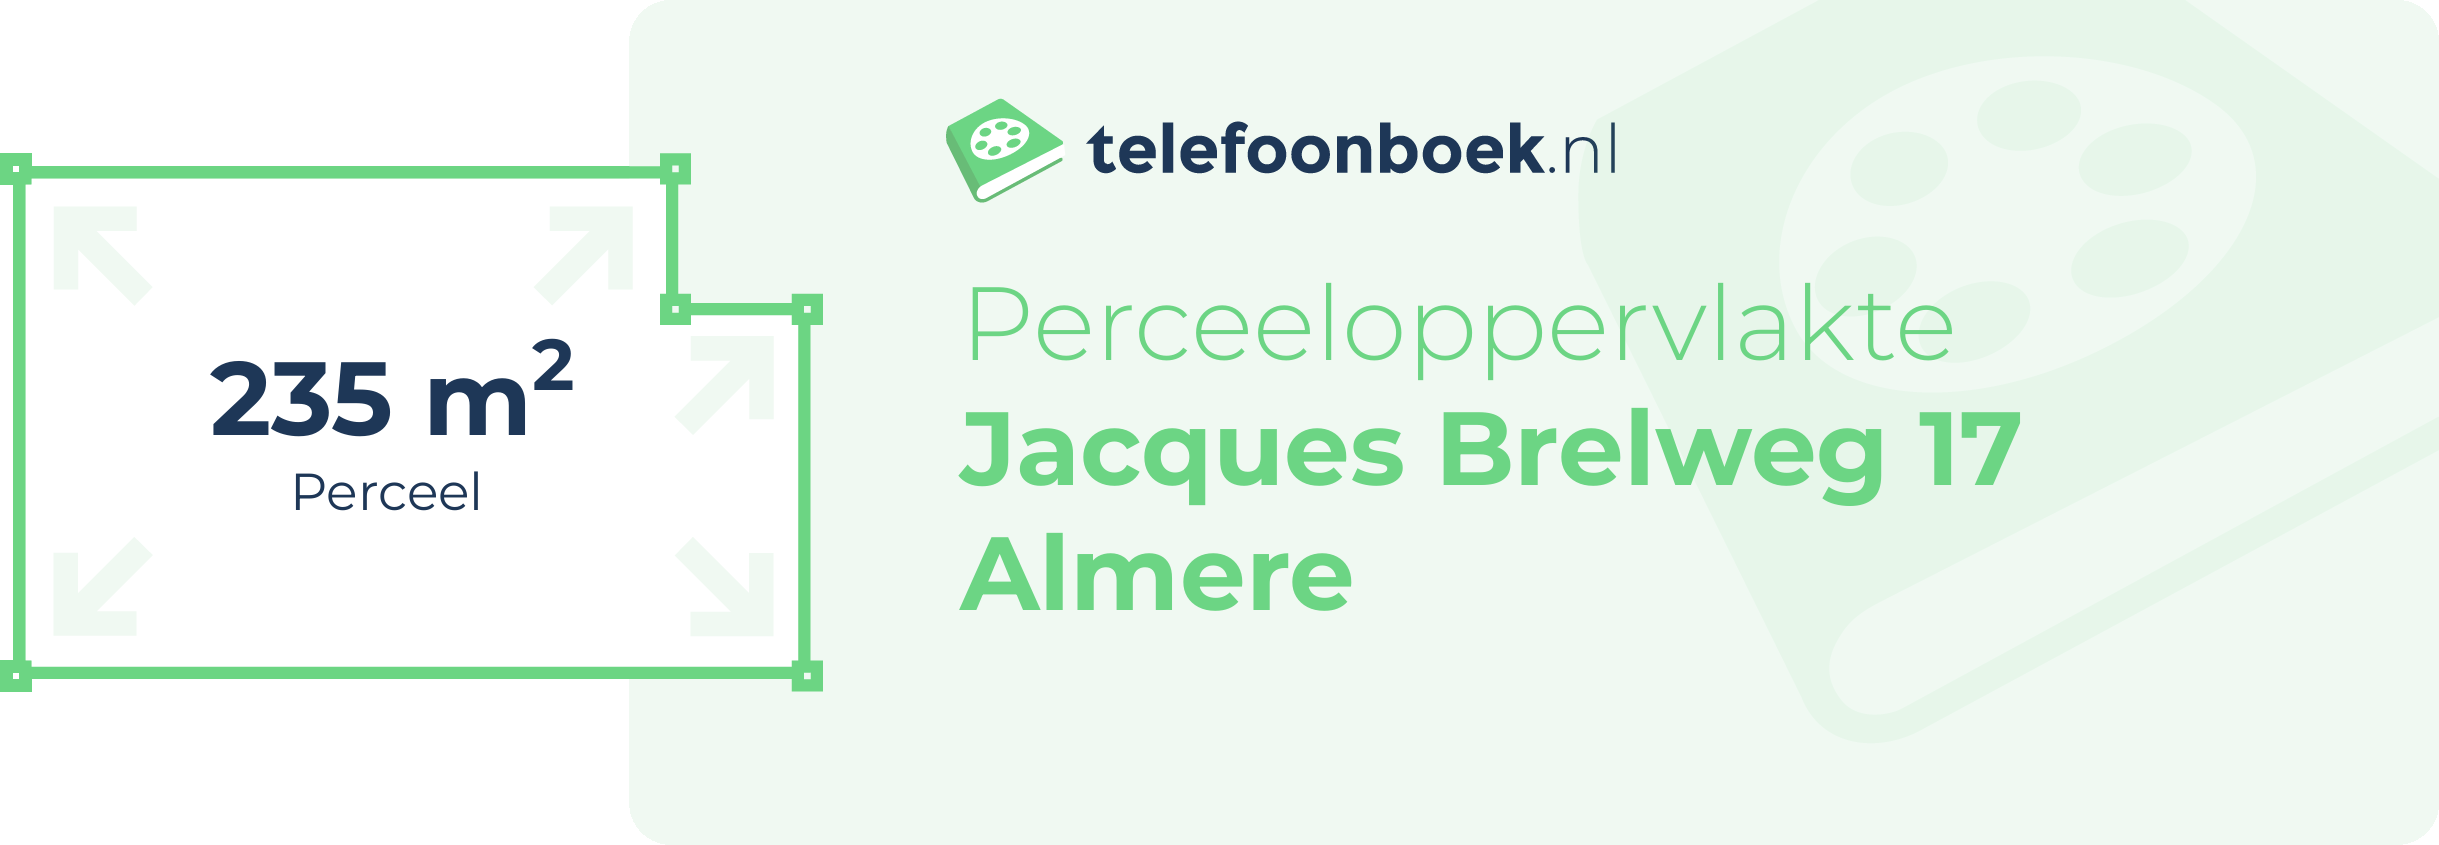 Perceeloppervlakte Jacques Brelweg 17 Almere